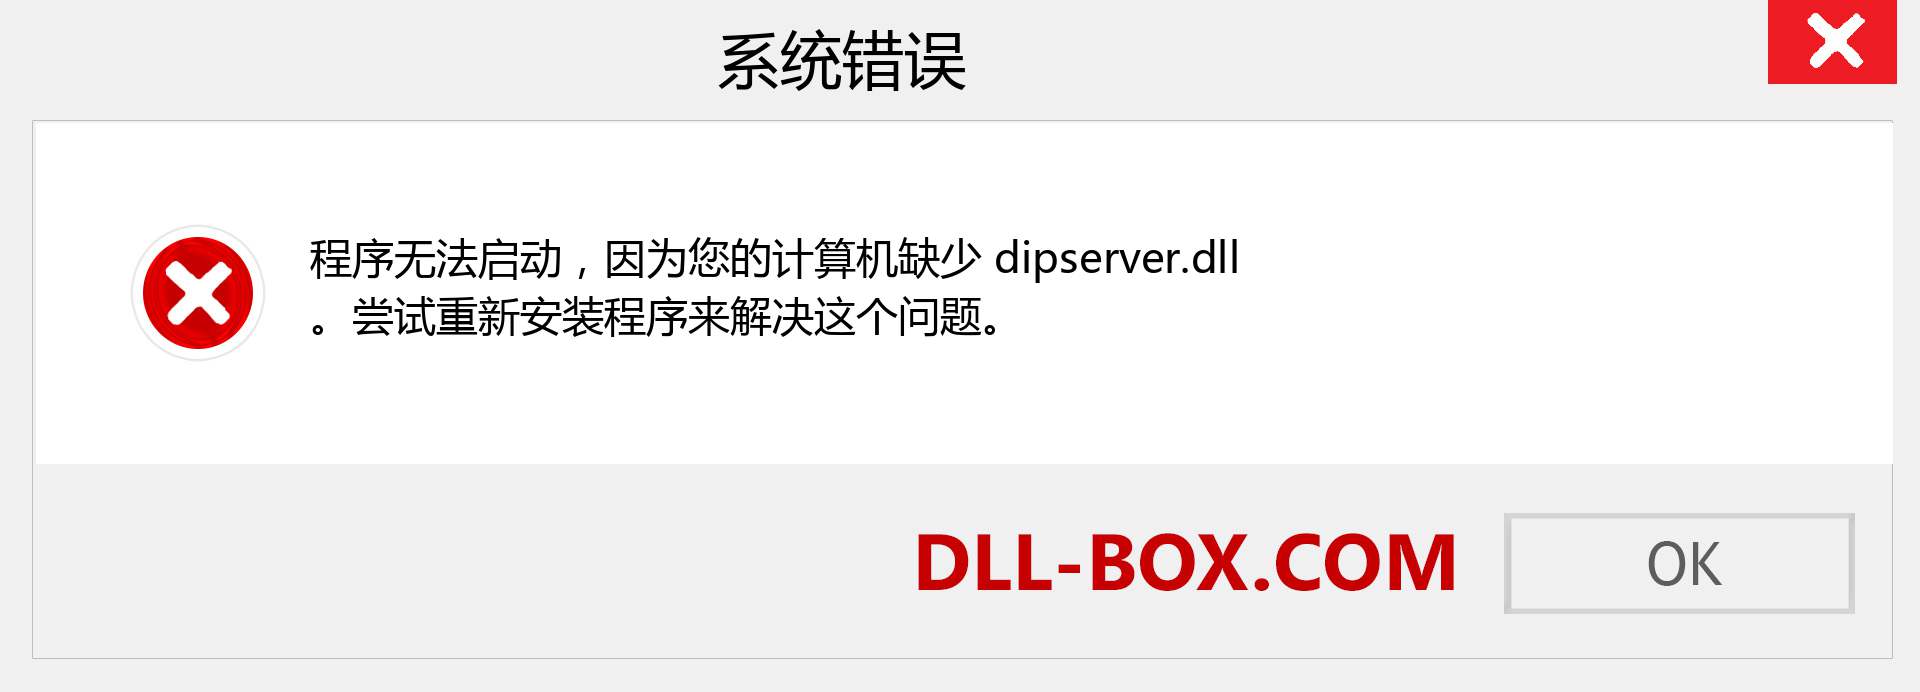 dipserver.dll 文件丢失？。 适用于 Windows 7、8、10 的下载 - 修复 Windows、照片、图像上的 dipserver dll 丢失错误